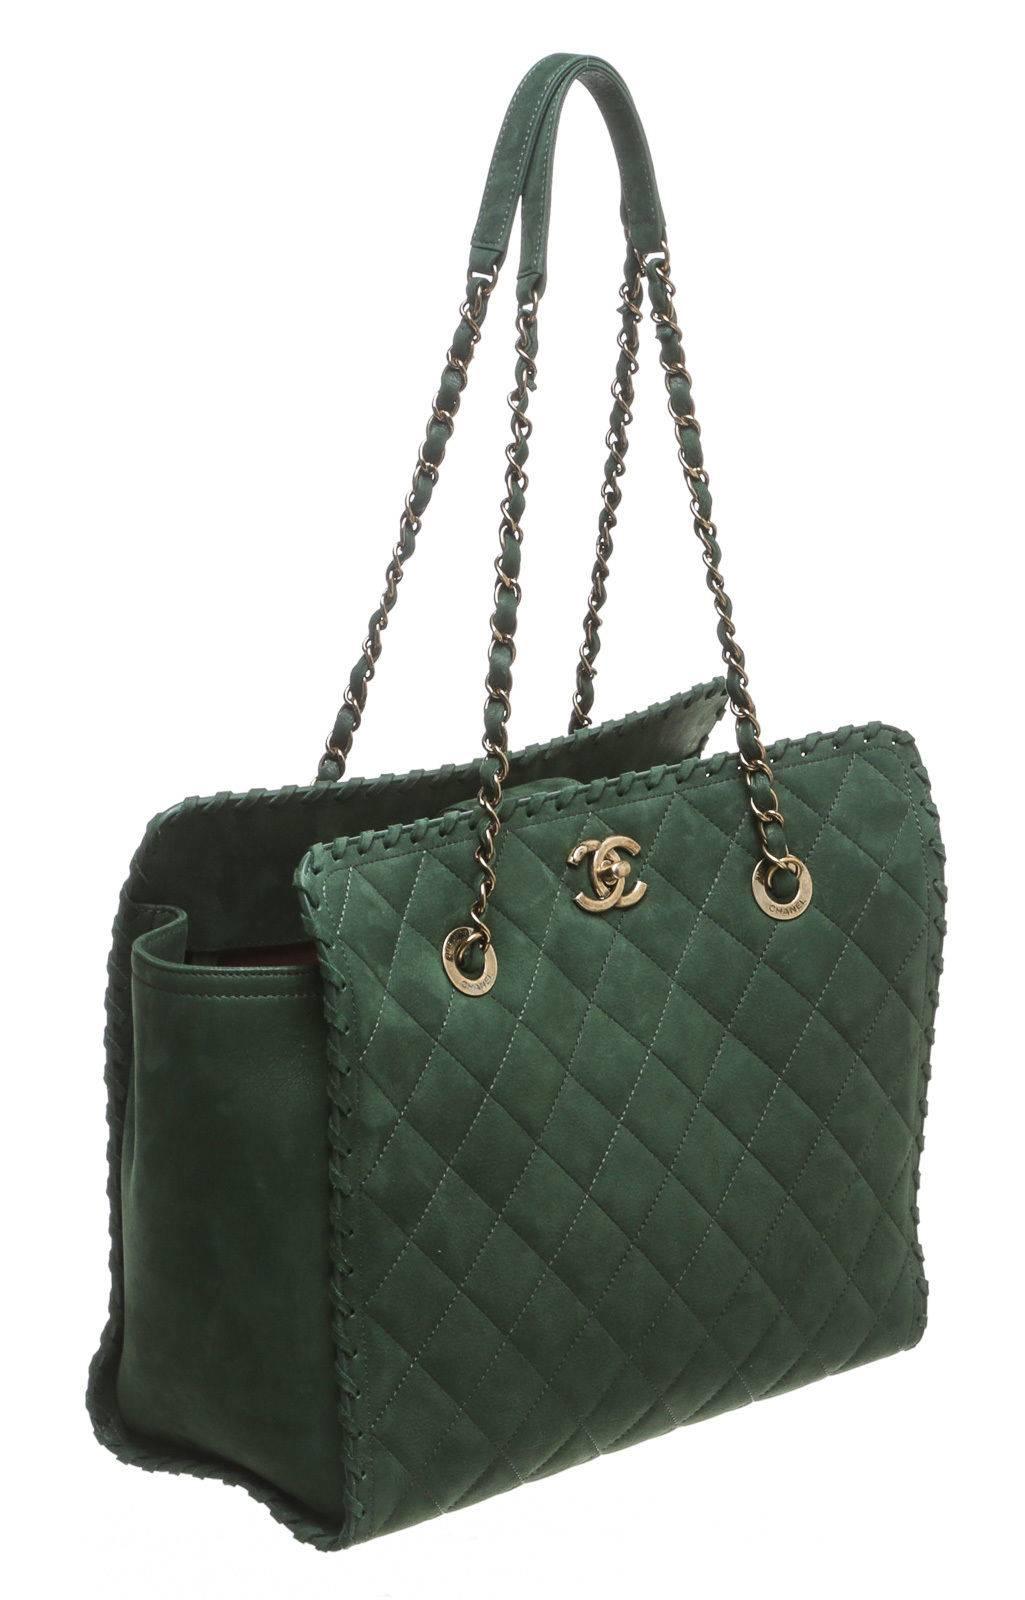 Designer: Chanel
Type: Handbag
Condition: Excellent condition
Color: Green
Material: Suede
Dimensions: 11.75